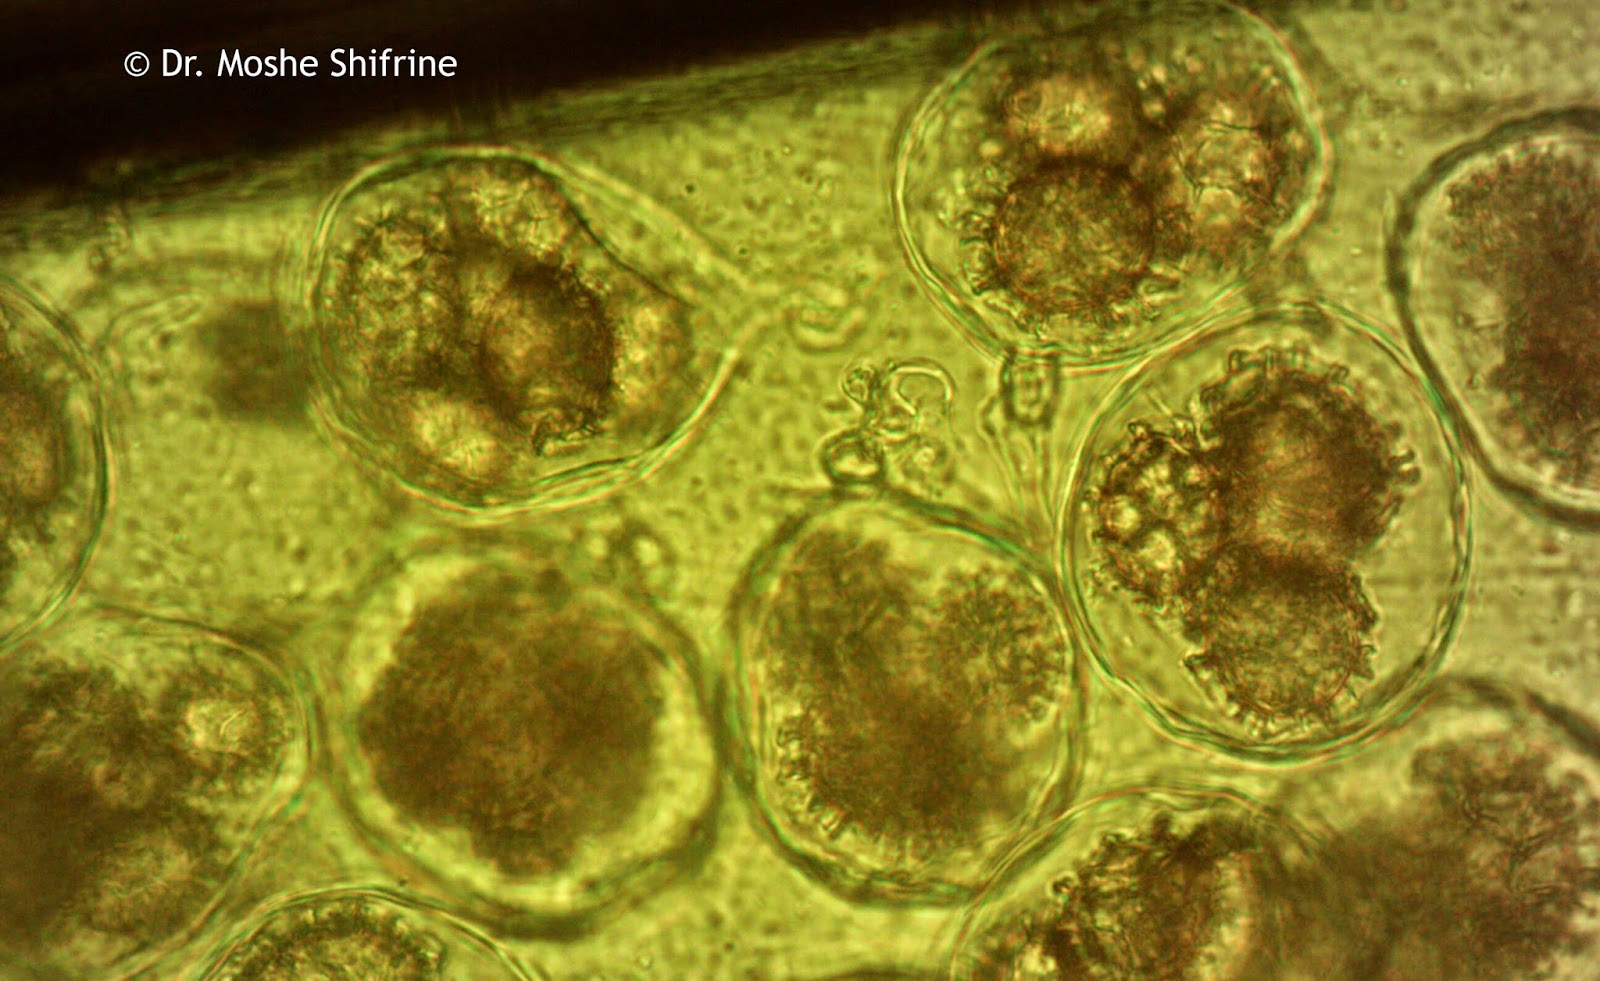 Funghi spore, 1000x, under biological microscope.